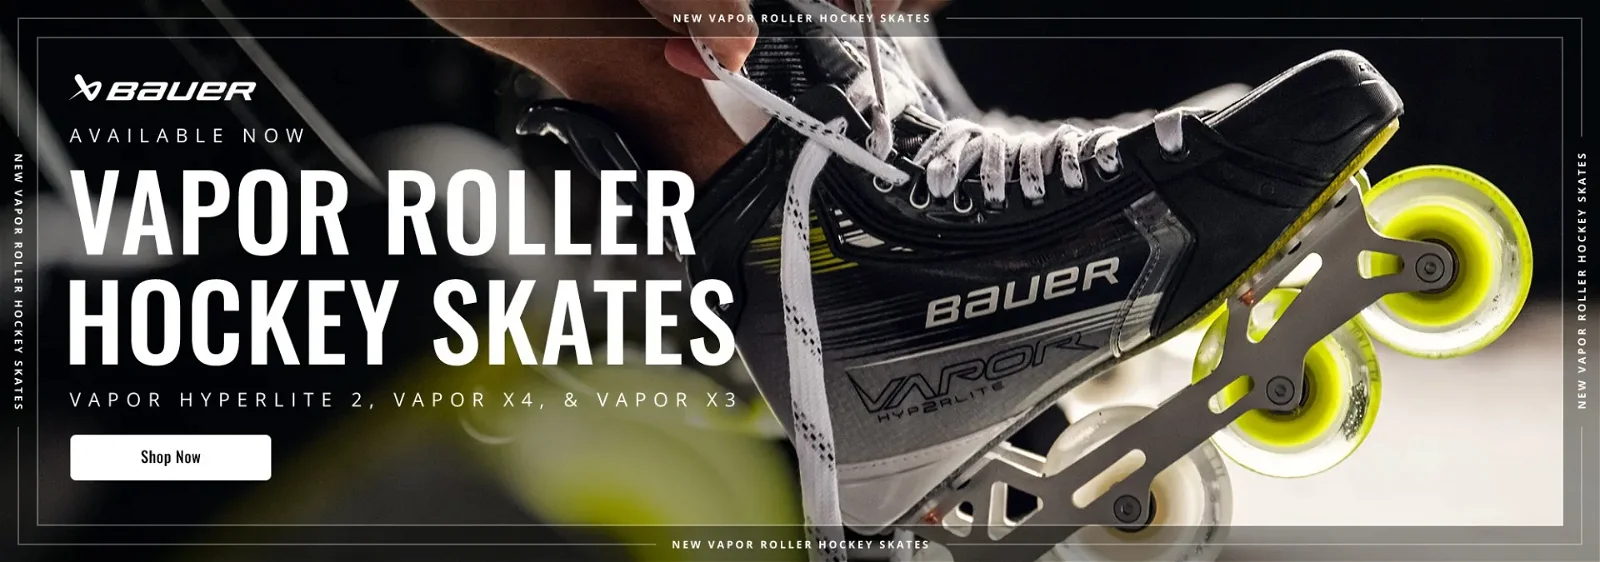 Bauer Vapor Roller Hockey Skates